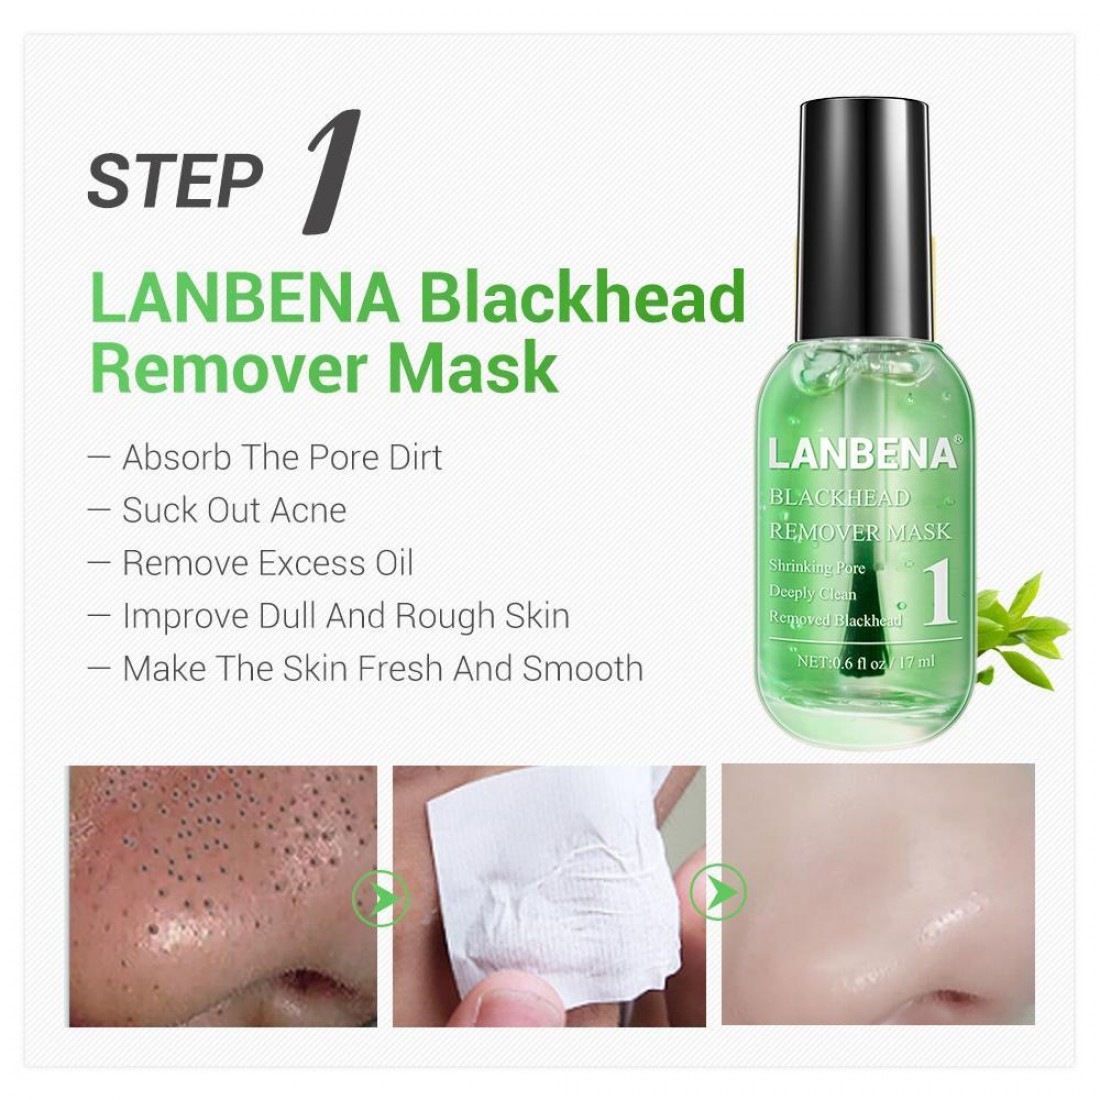 Blackhead remover маска. Маска LANBENA Blackhead Remover. Маска Blackhead Remover Mask. LANBENA комбинированный набор для очистки пор. Ланбена сыворотка для лица.